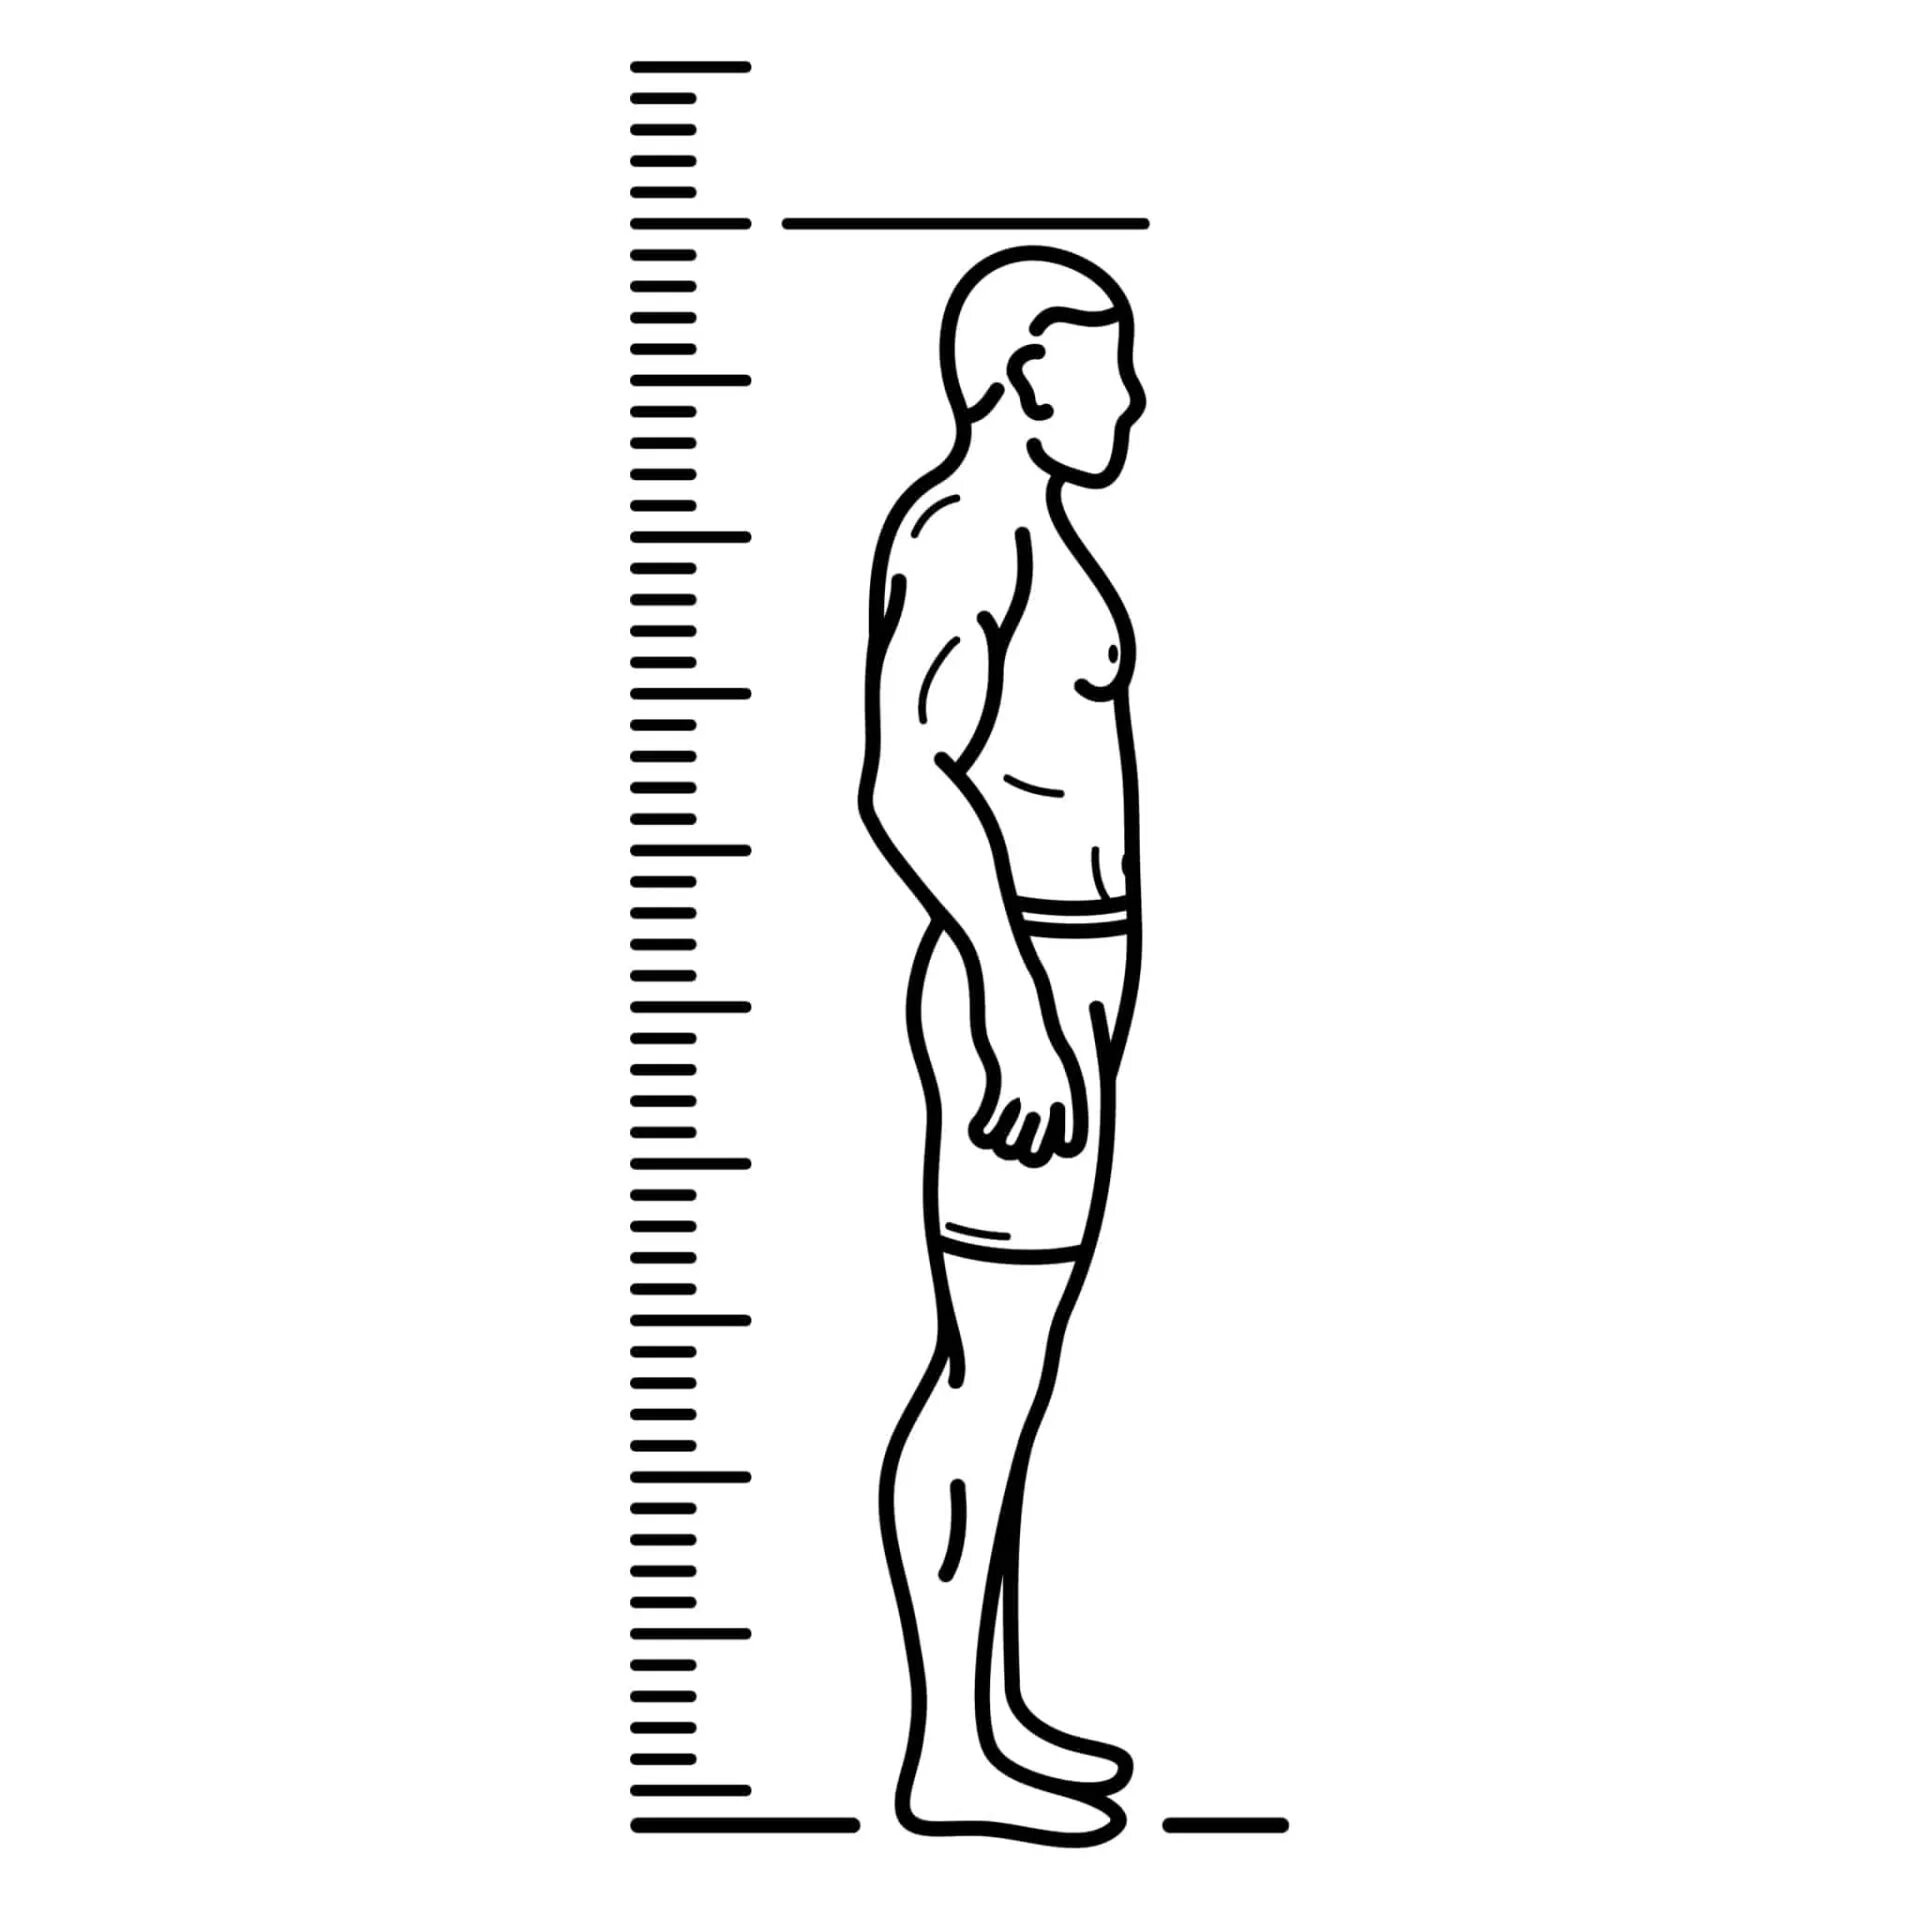 Height load. Шкала роста. Линейка роста человека. Измерение роста человека. Человек рядом с линейкой.